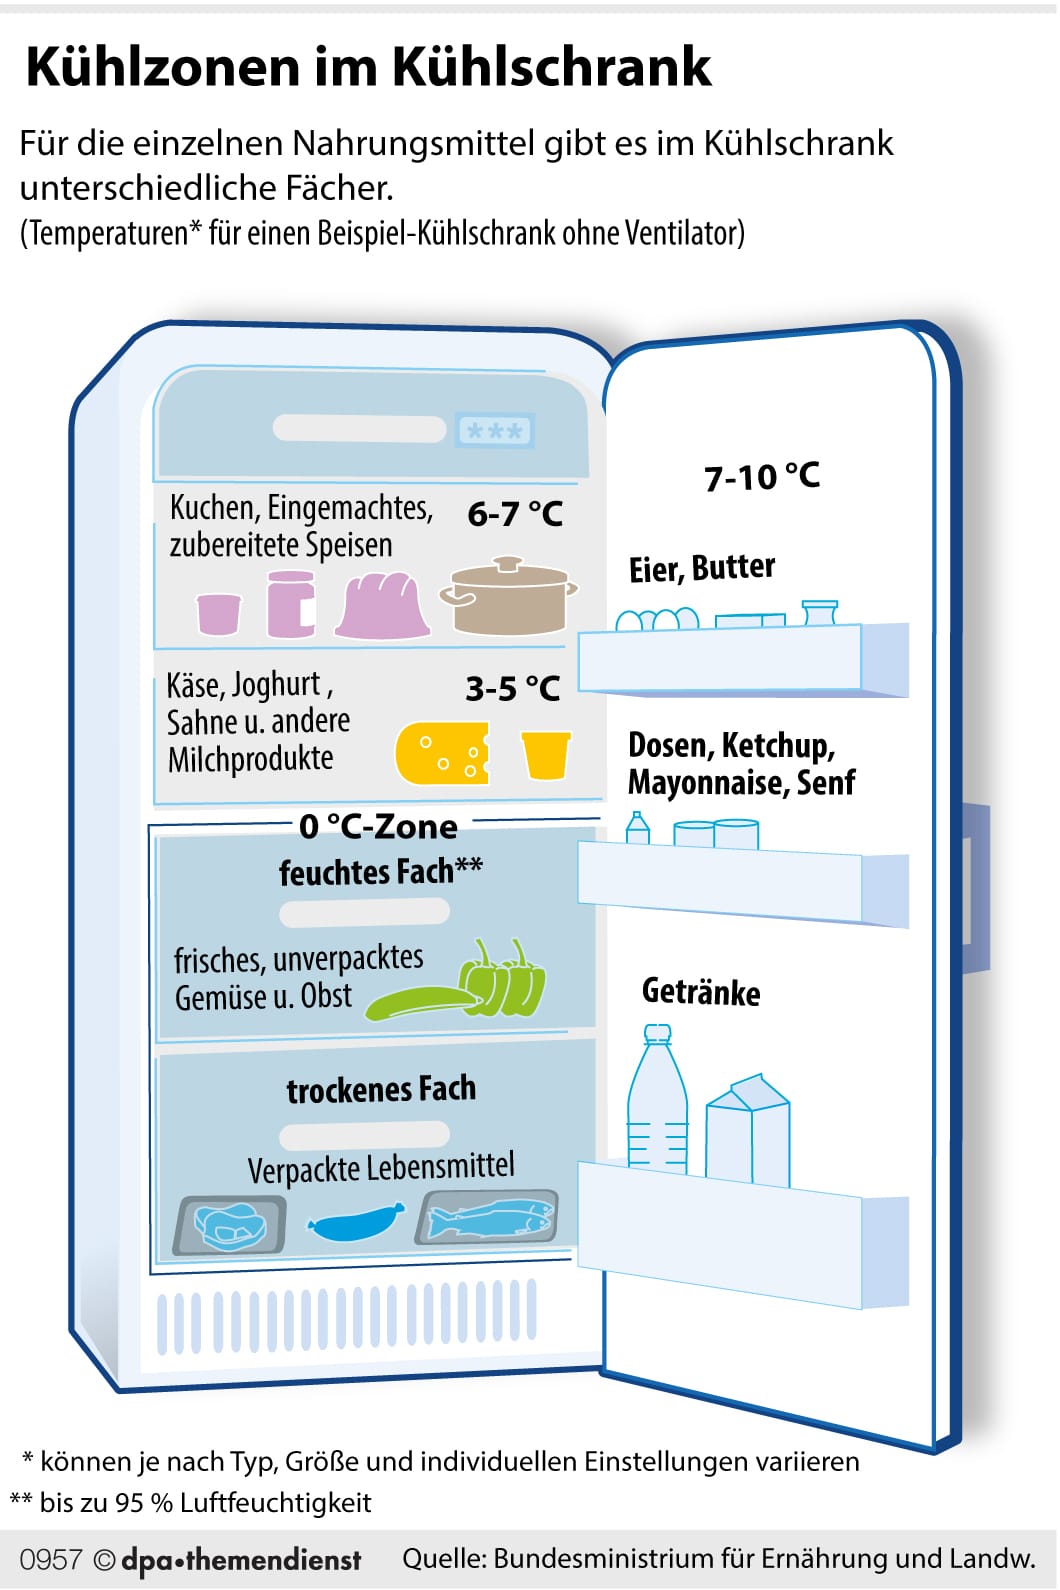 Kühlzonen im Kühlschrank: Die Null-Grad-Zone befindet sich meist im unteren Teil des Kühlschranks und gliedert sich in zwei Bereiche mit verschieden hoher Luftfeuchtigkeit für trockene und feuchtere Lagerung.